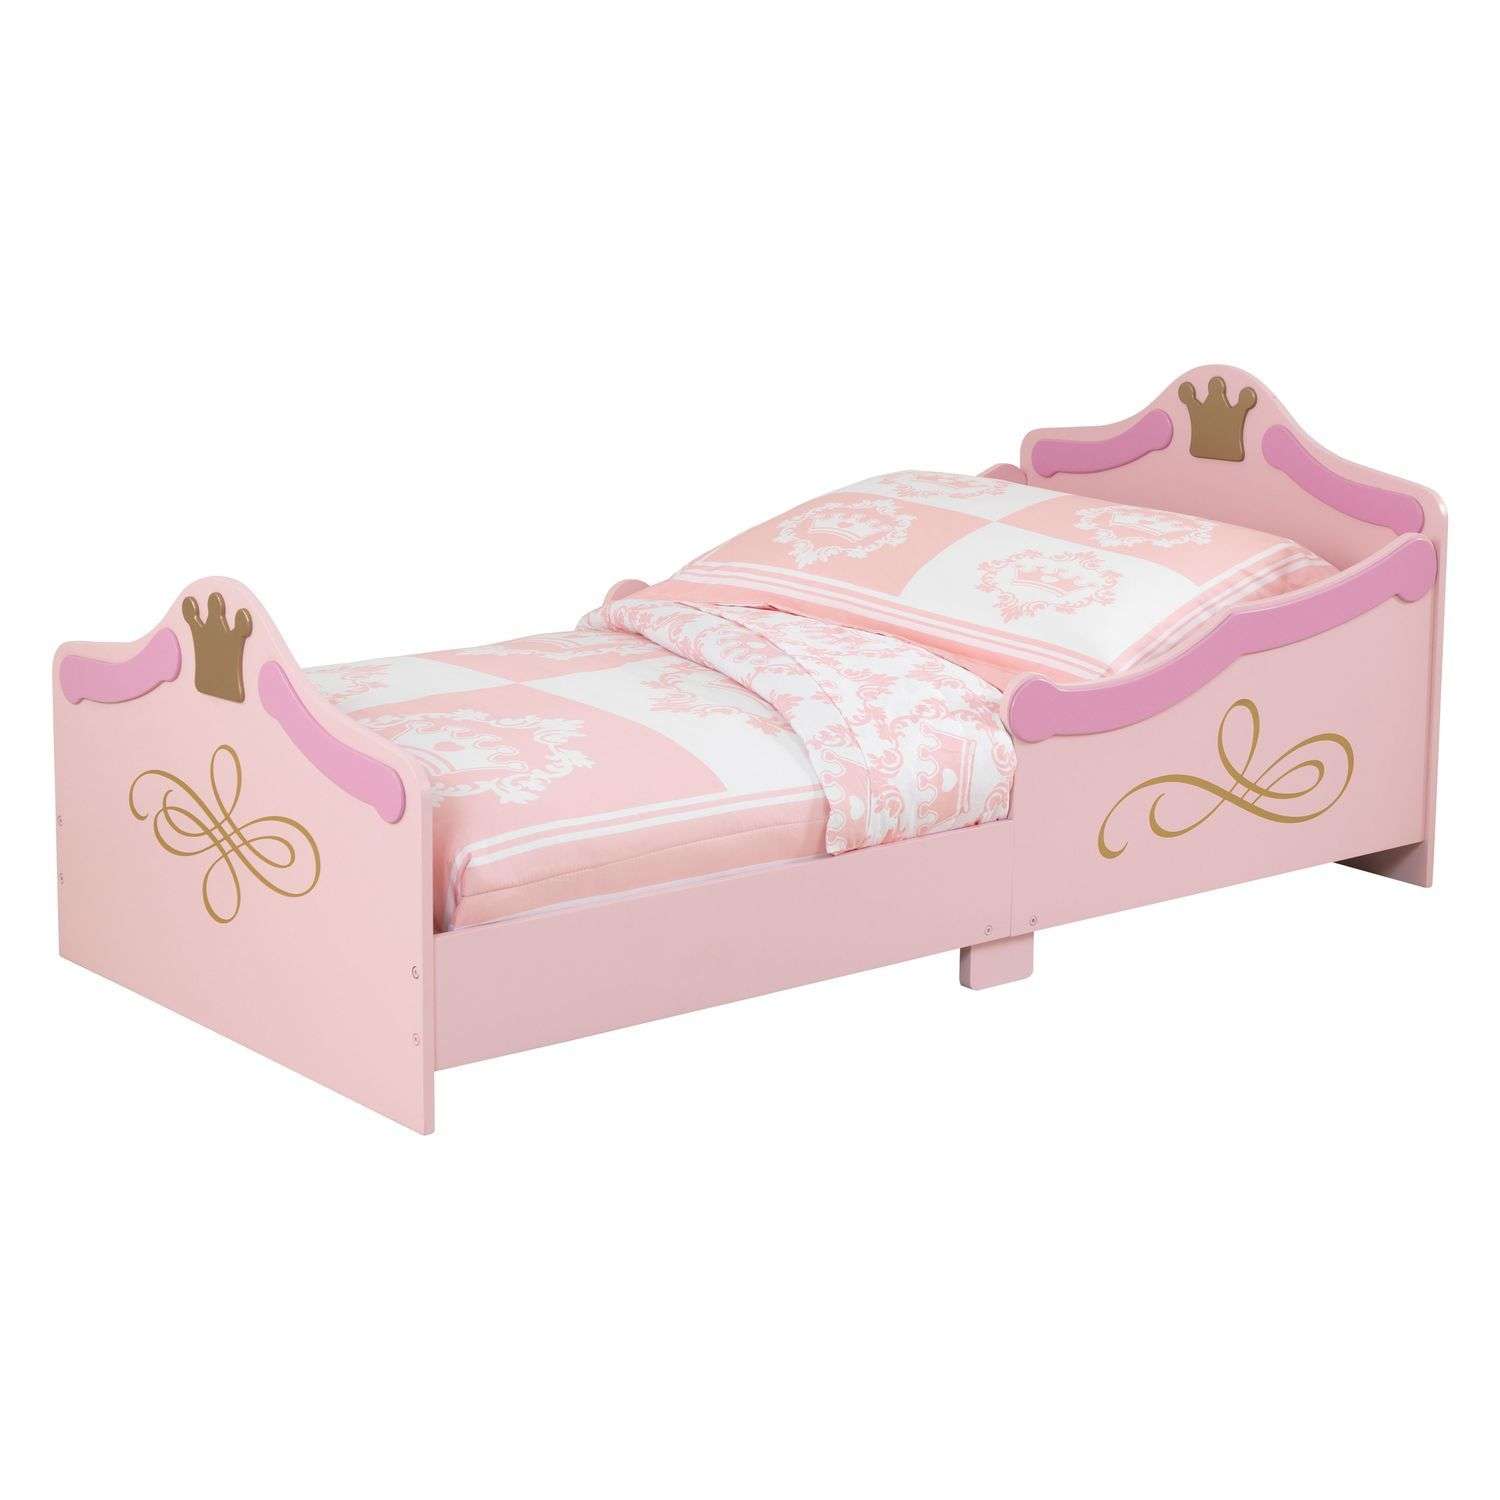 Кровать KidKraft Принцесса - фото 1